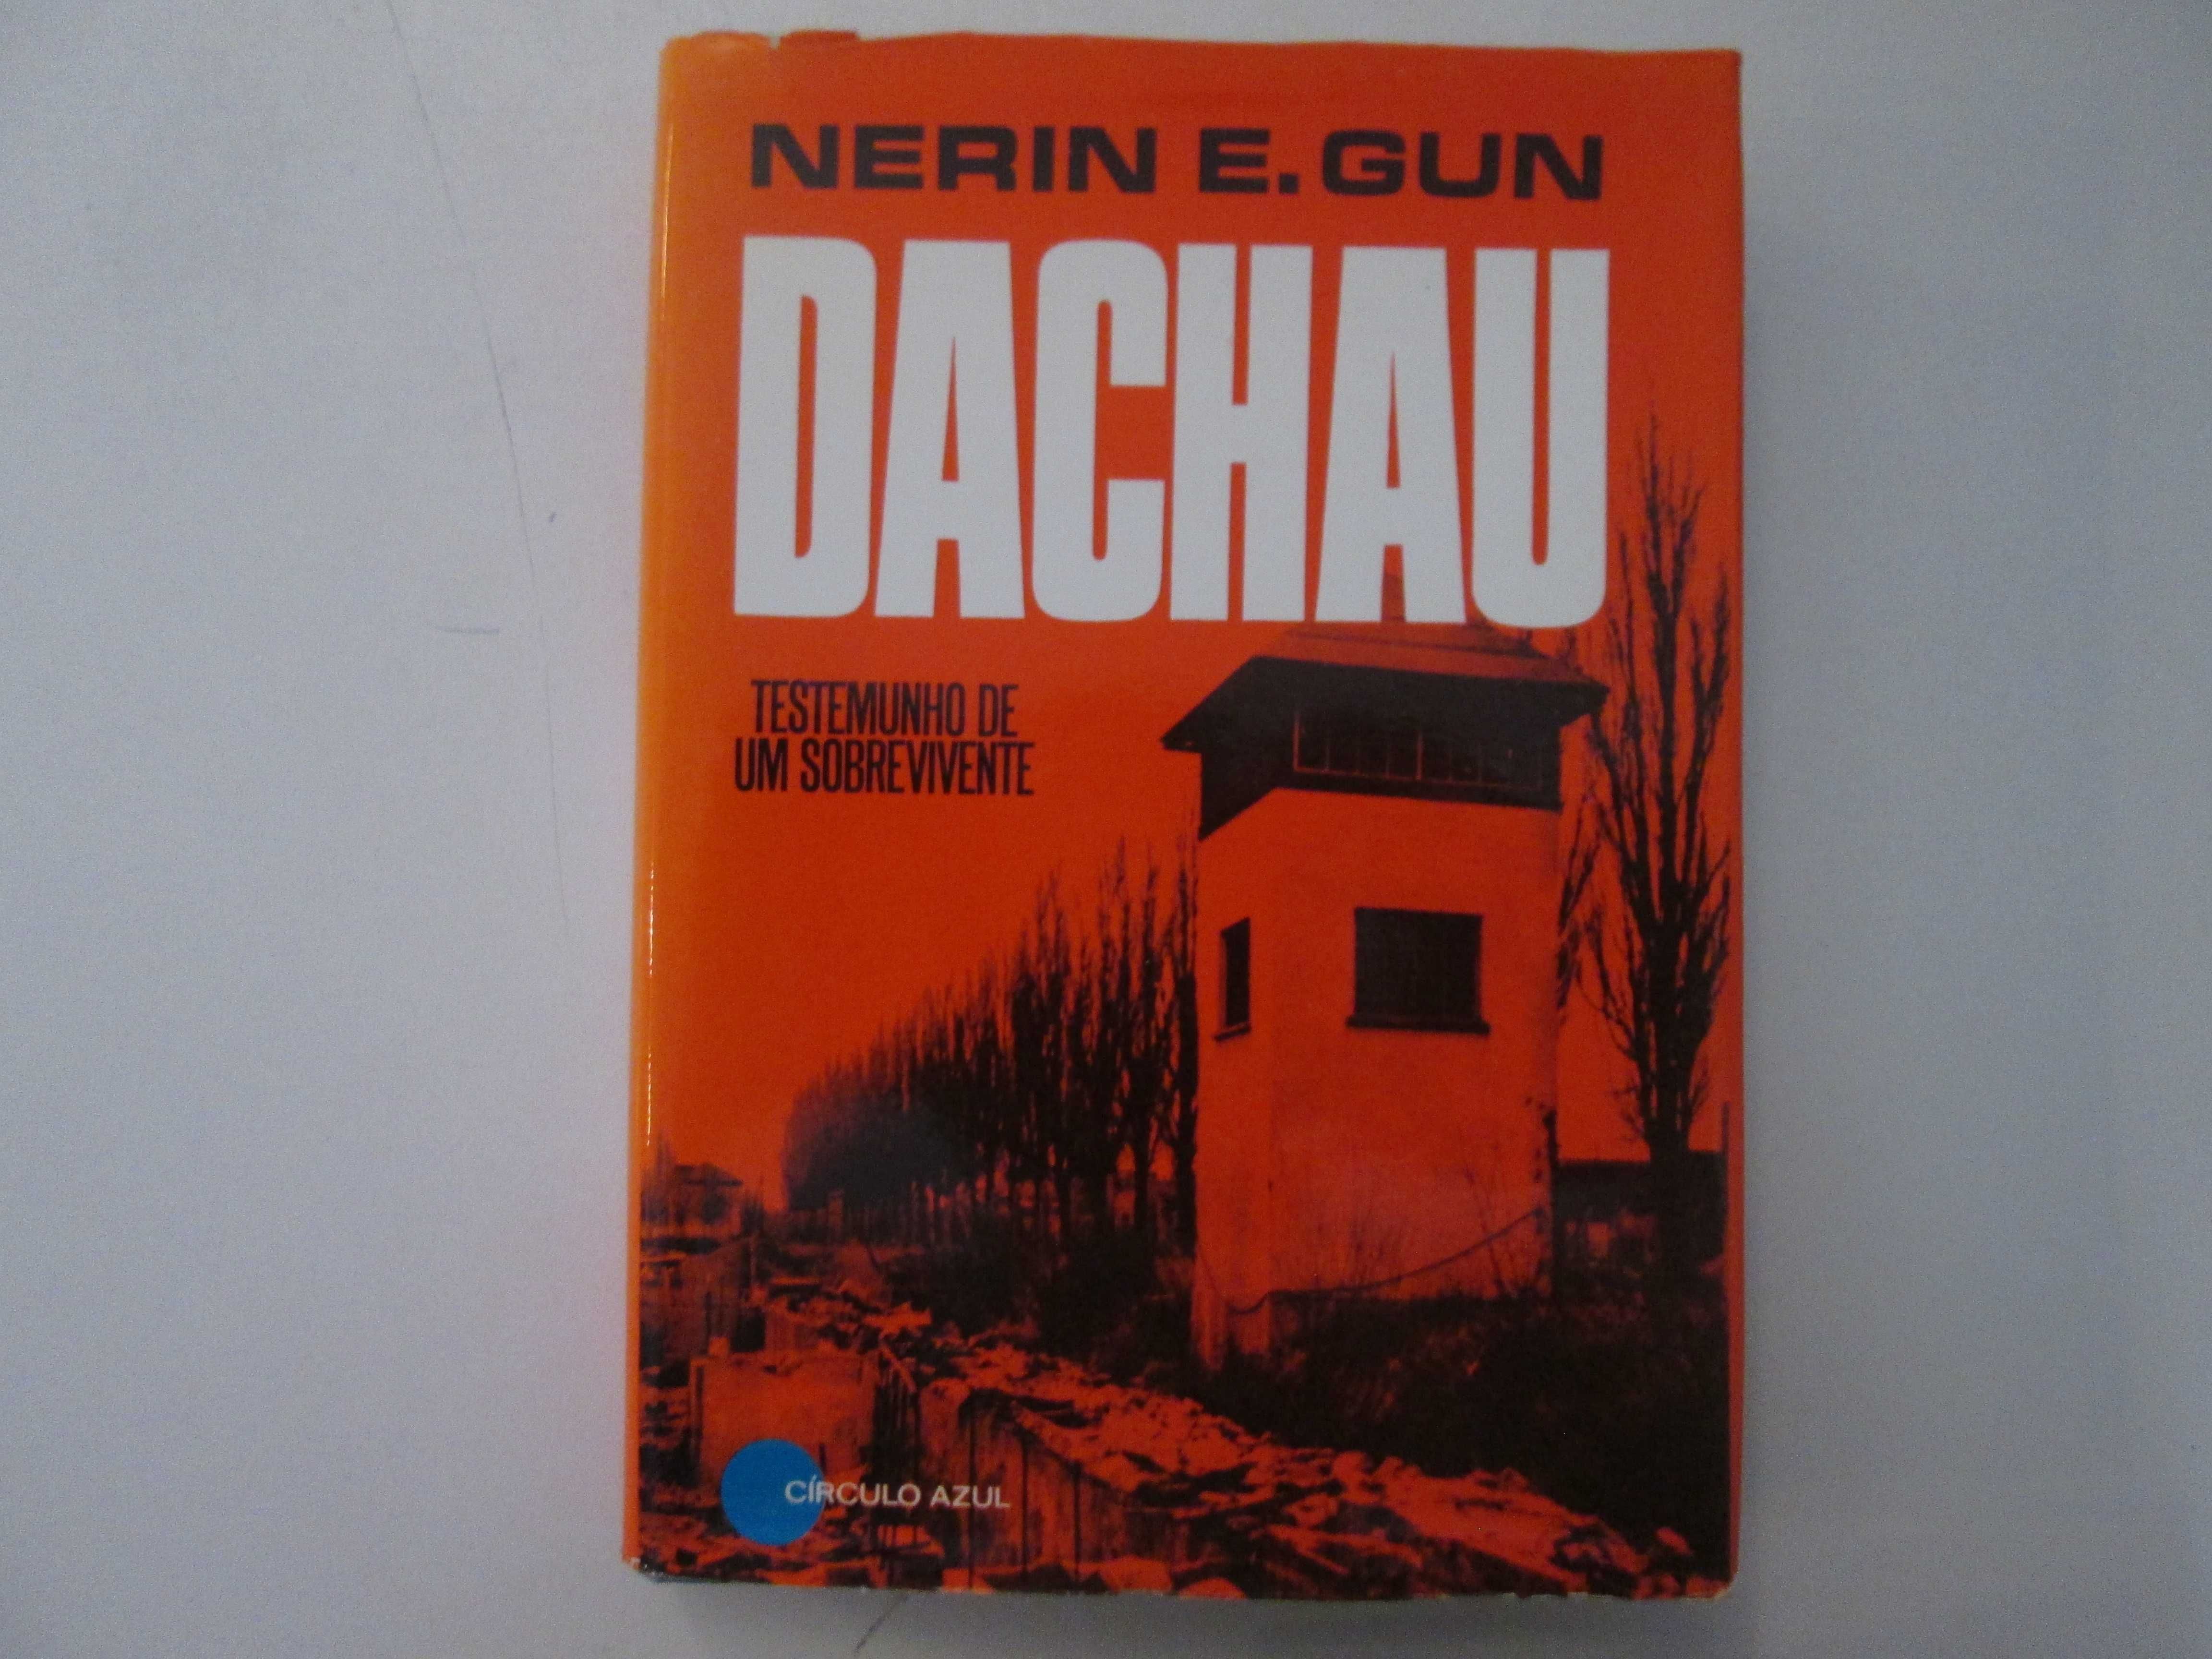 Dachau- Nerin E. Gun